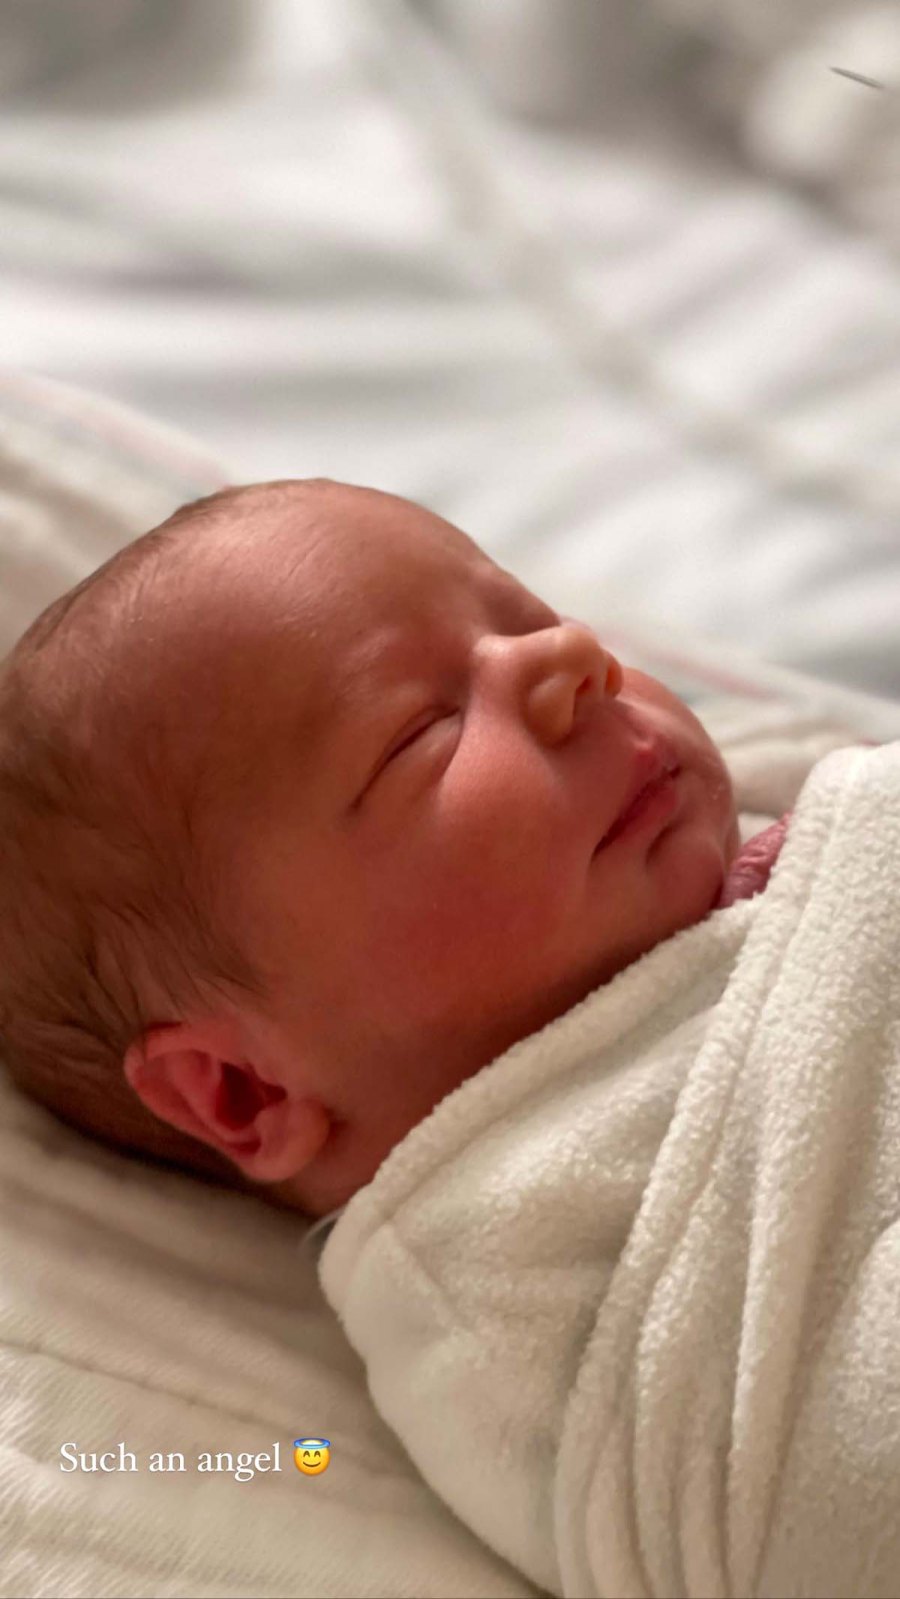 Arie Luyendyk Jr Gives Update His Lauren Burnhams Twin Baby Girl